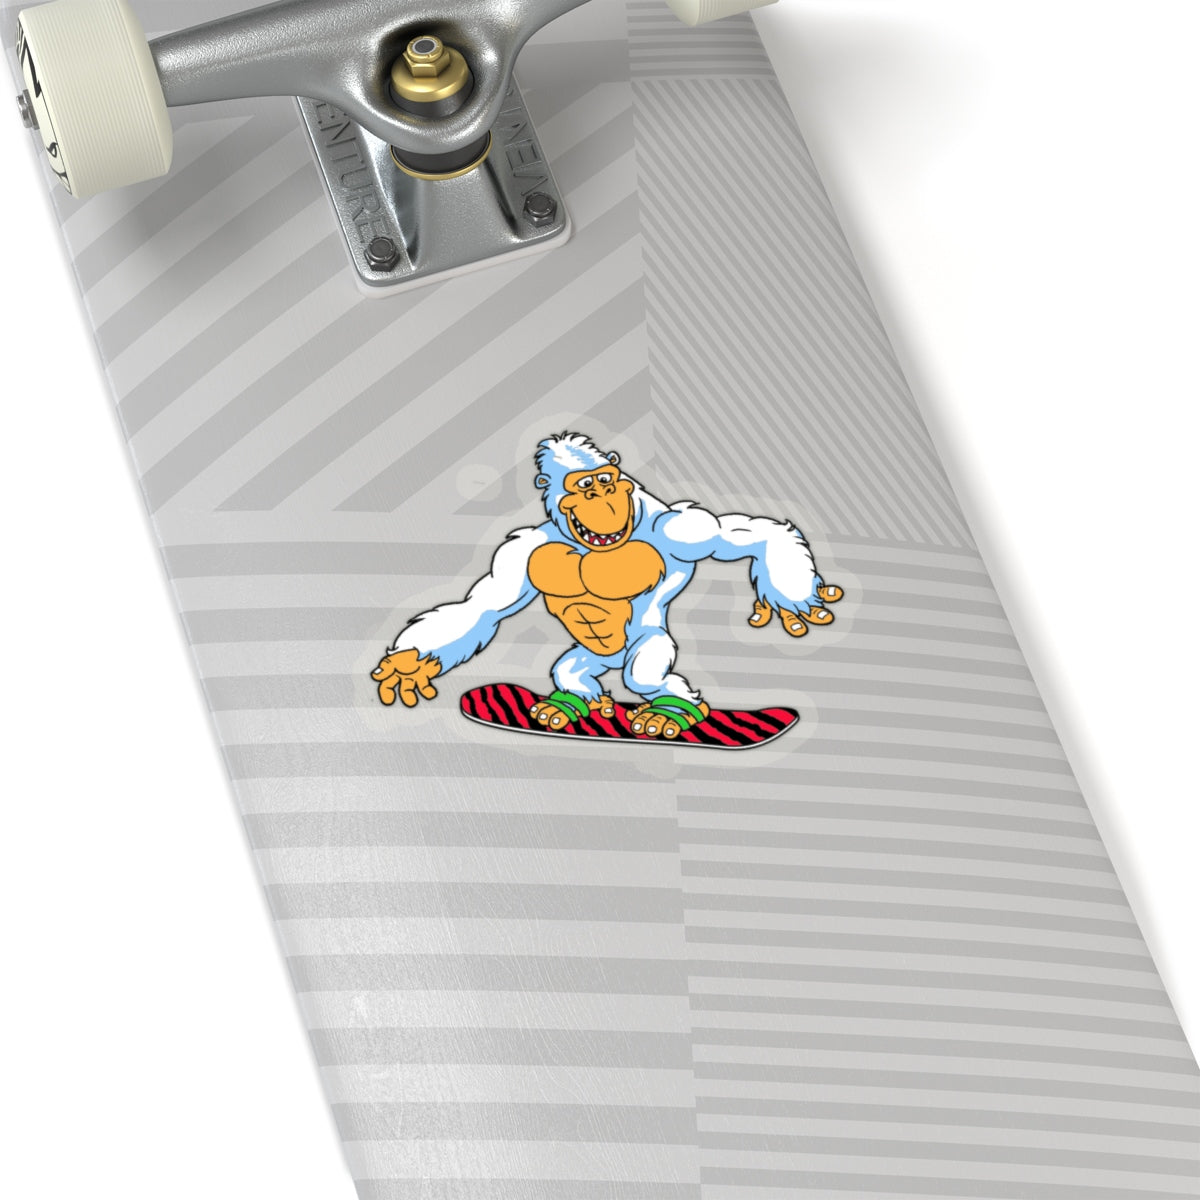 Snorilla snowboard sticker - Sno Cal